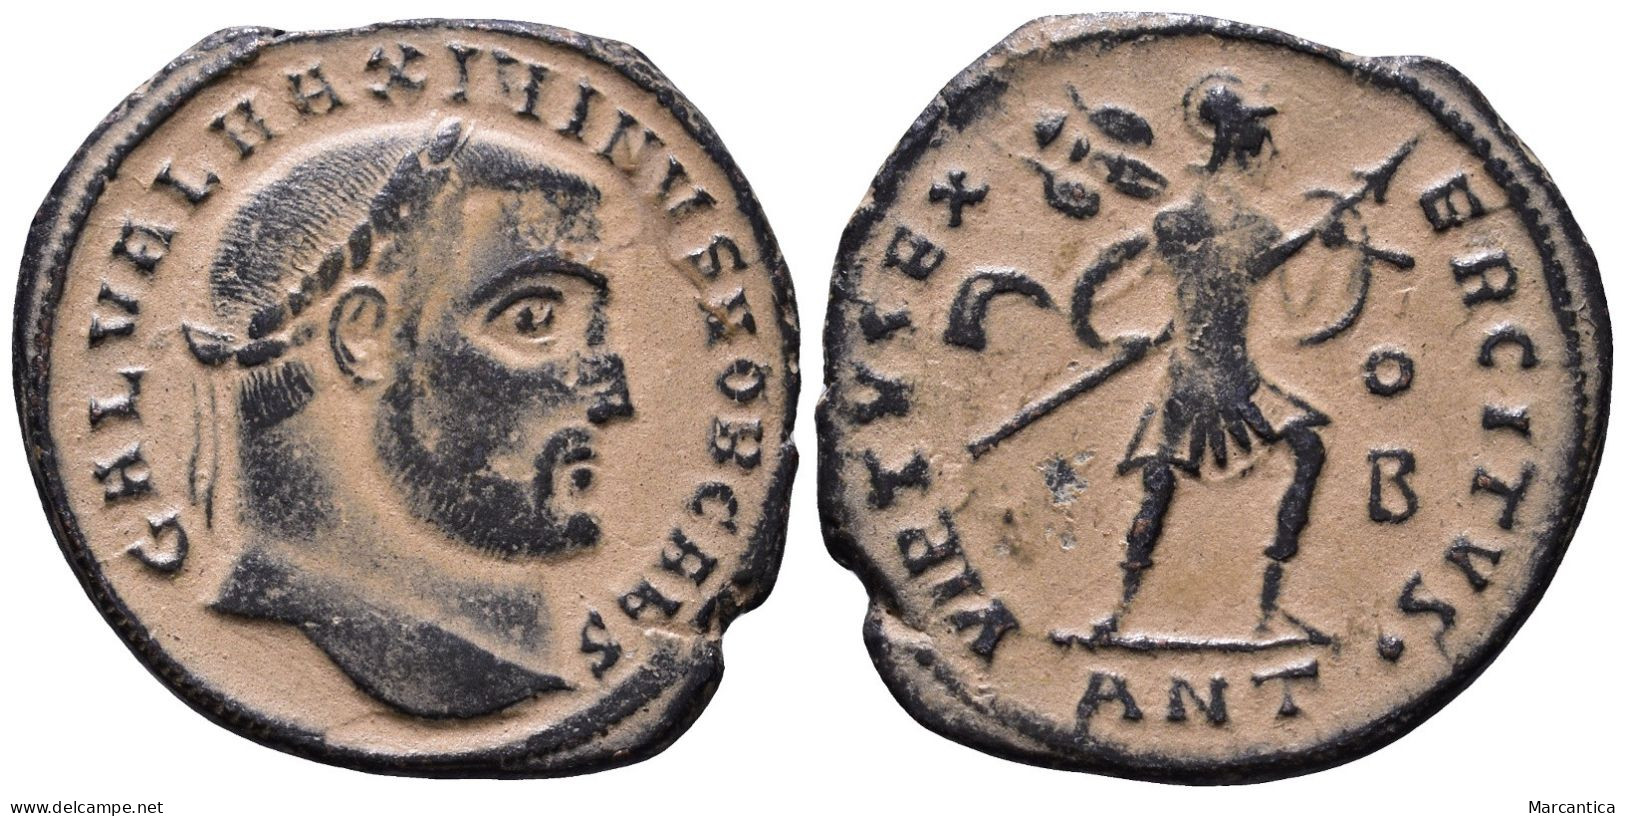 Maximinus II Daia, Caesar (305-313 AD). Antioch AE Follis (24 Mm 4,65 G) - El Impero Christiano (307 / 363)